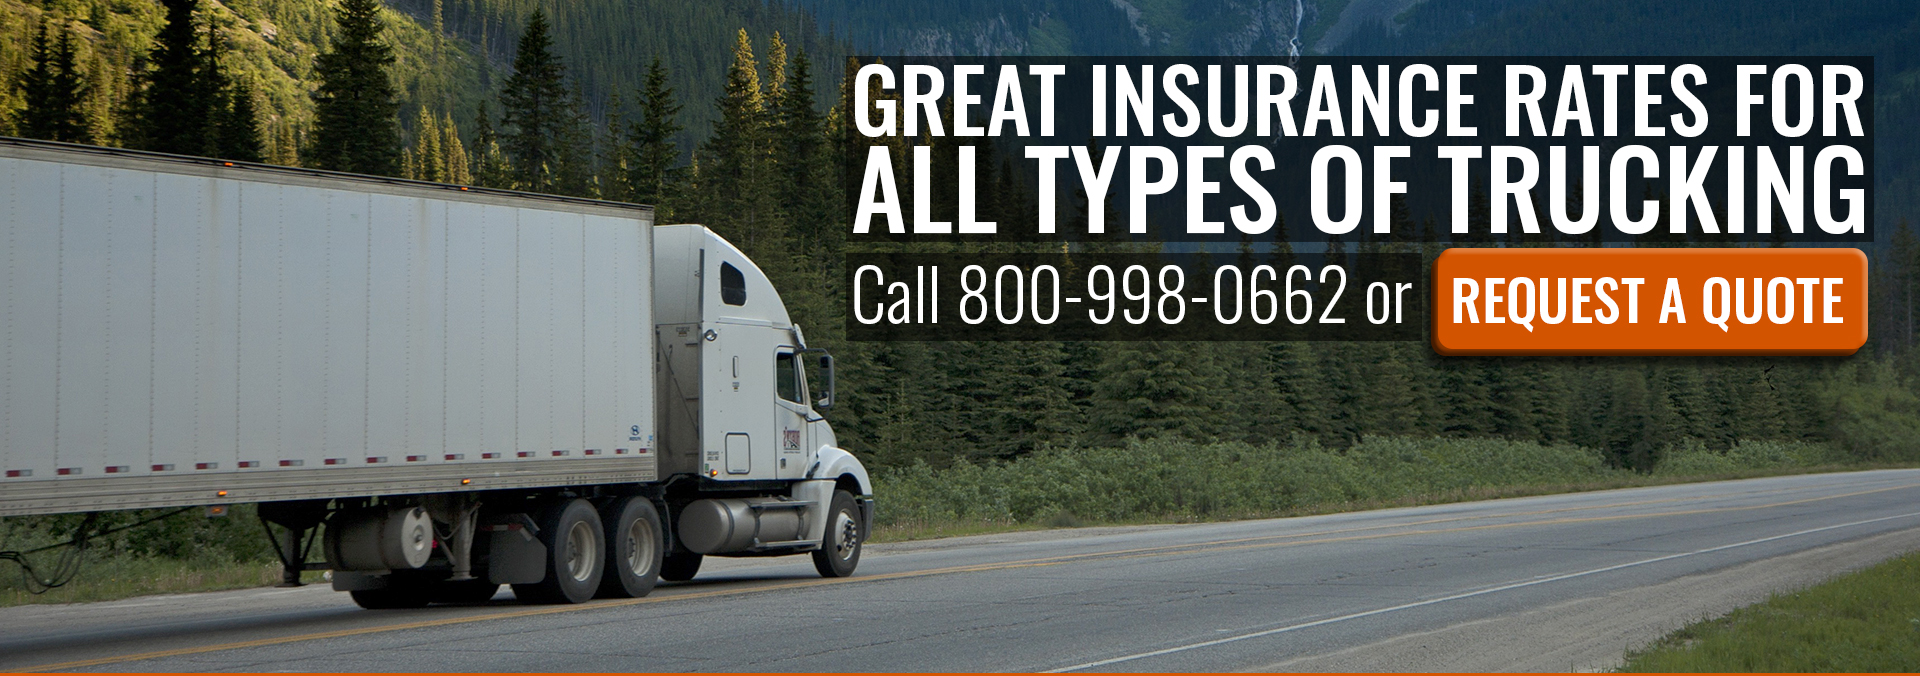 Truck Insurance Ohio